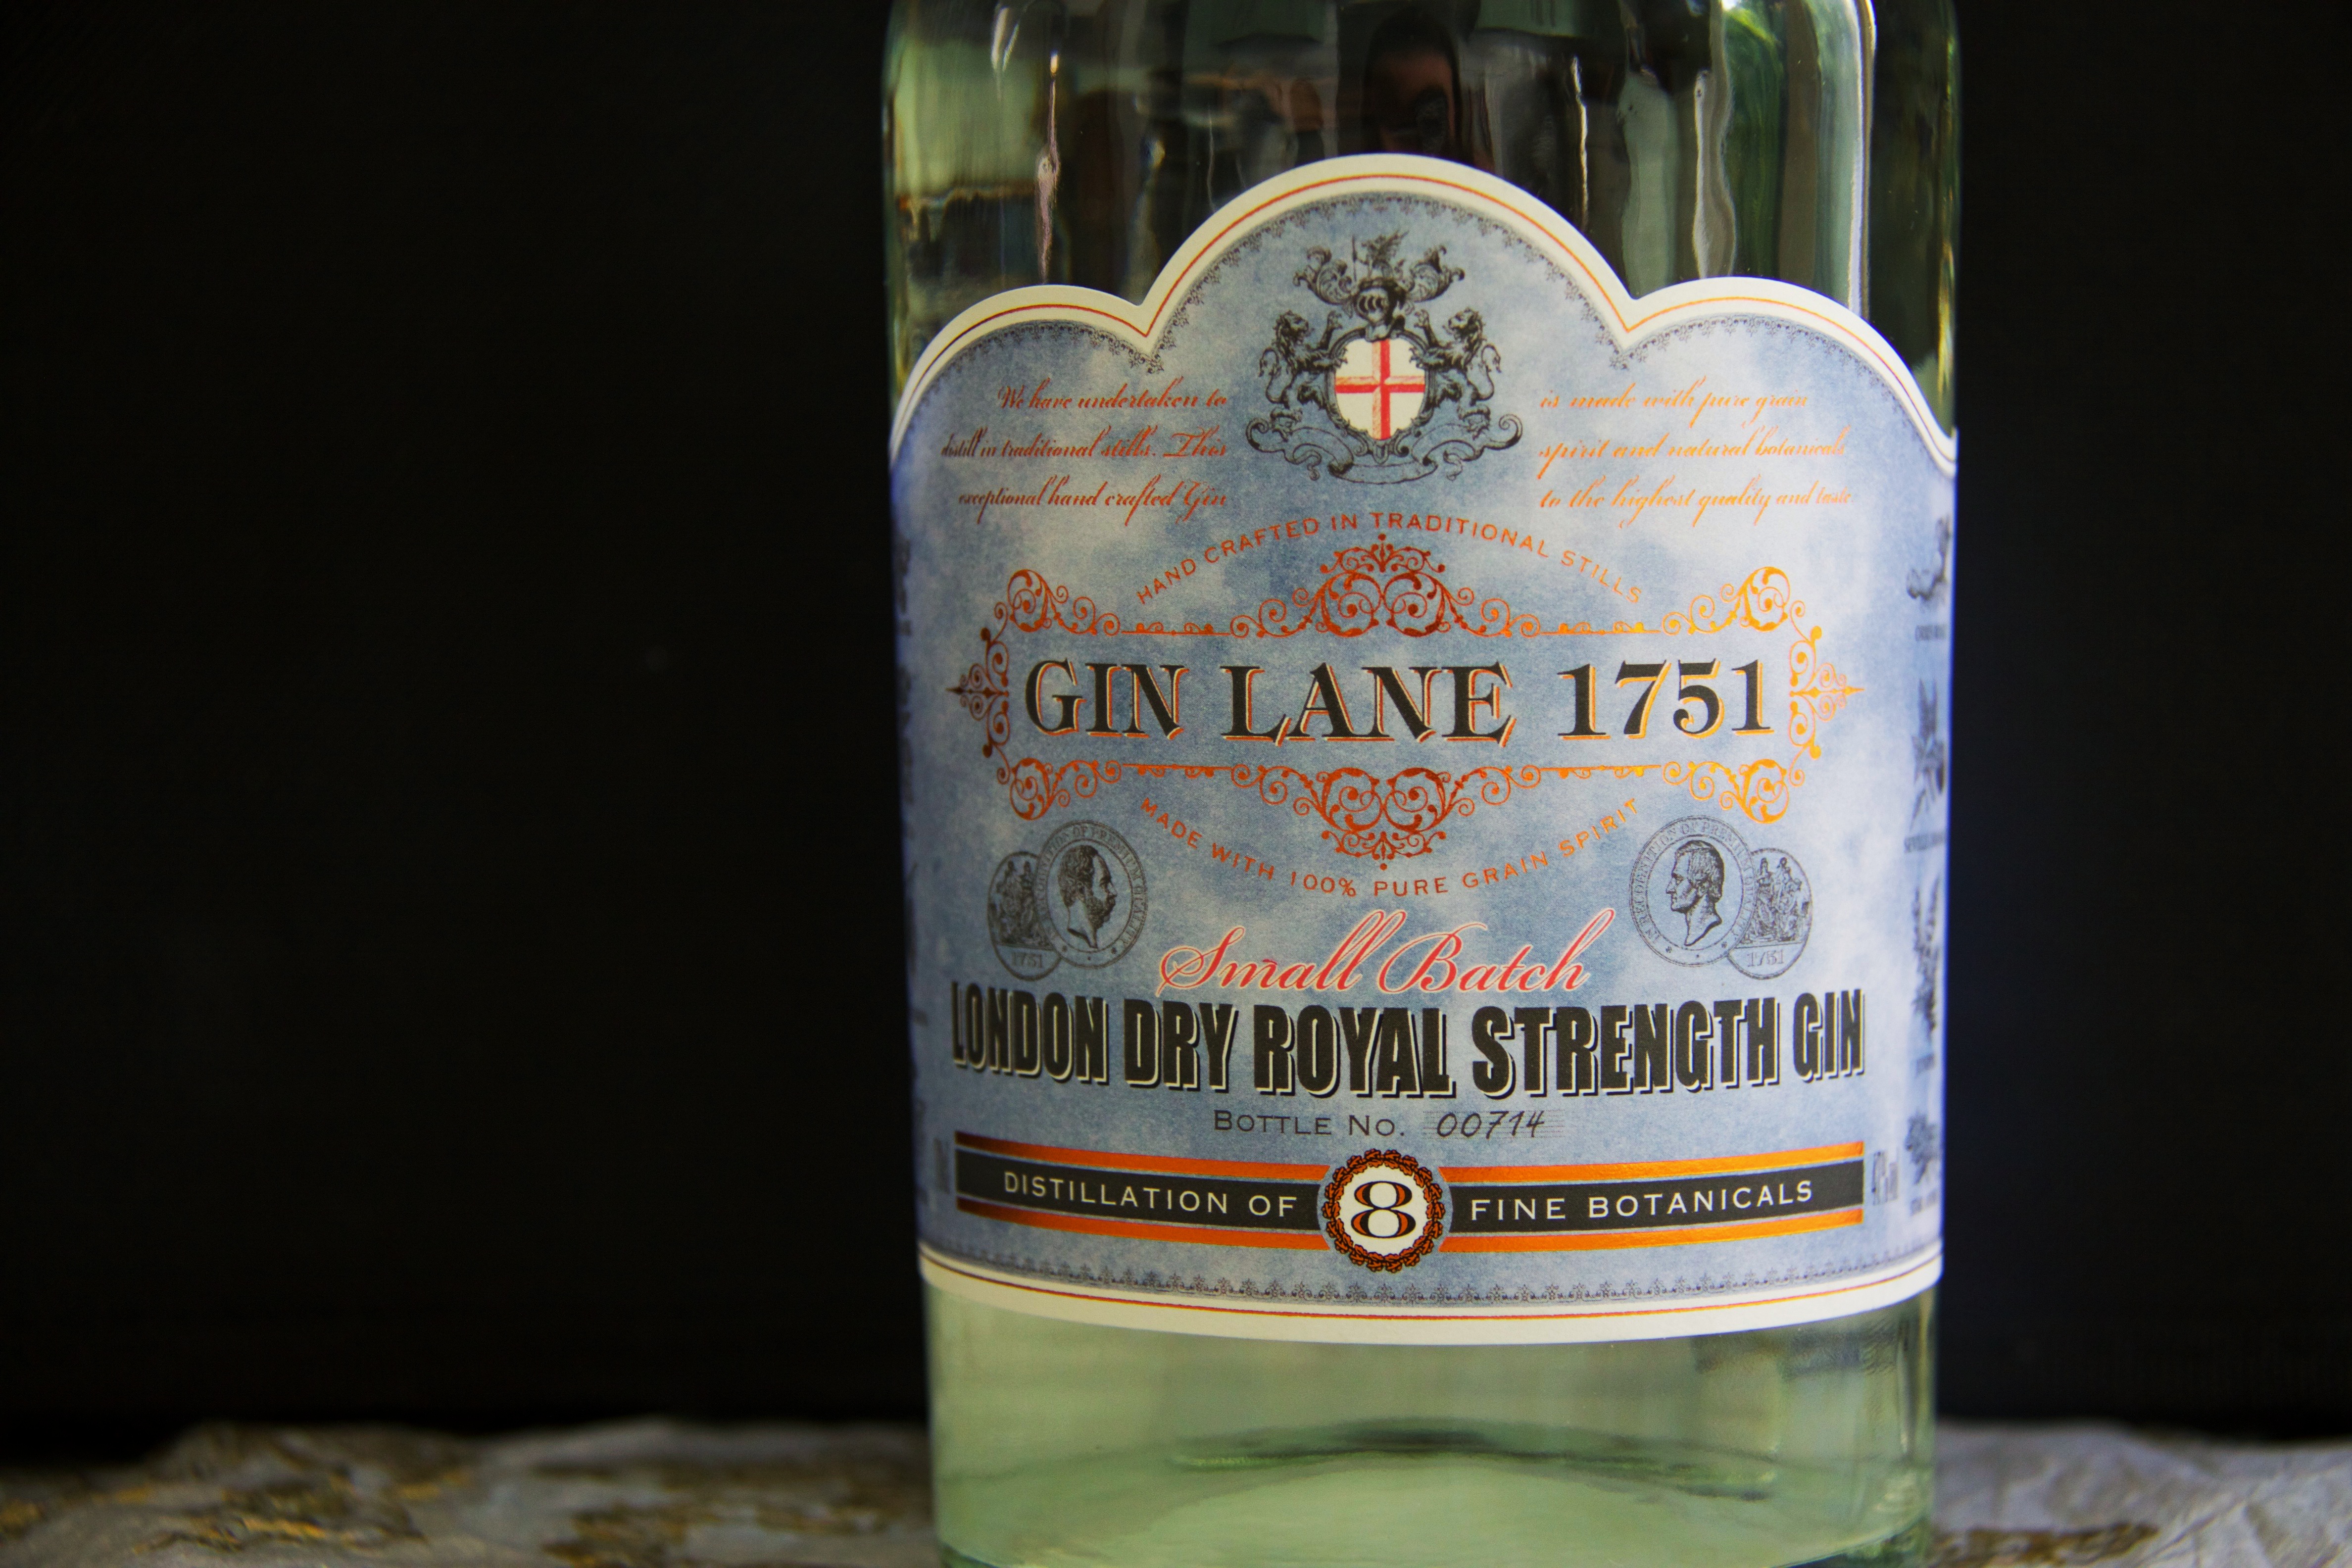 Gin Lane 1751, Label